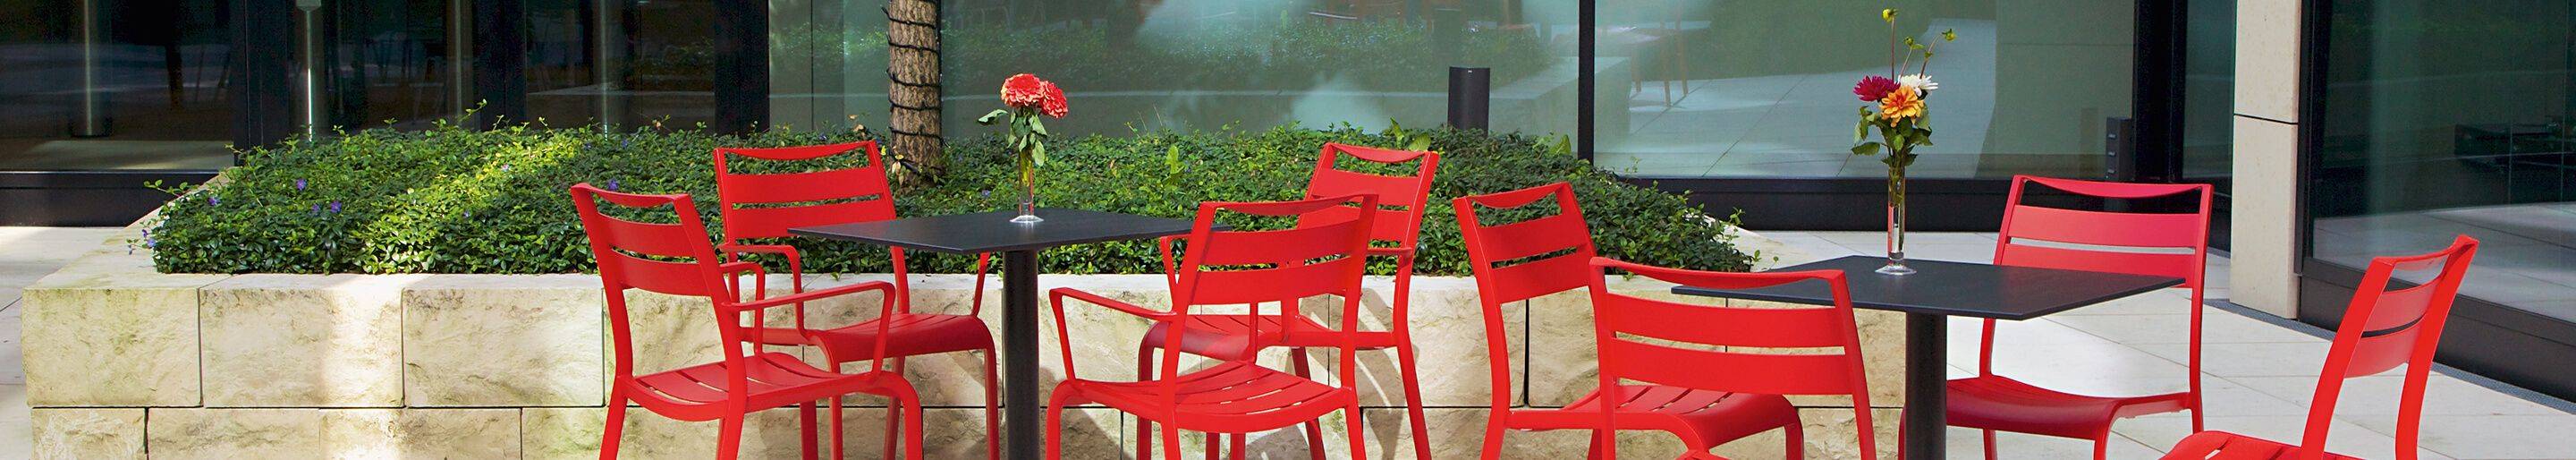 Outdoor Metallstühle für Gastronomie und Hotellerie und Biergarten